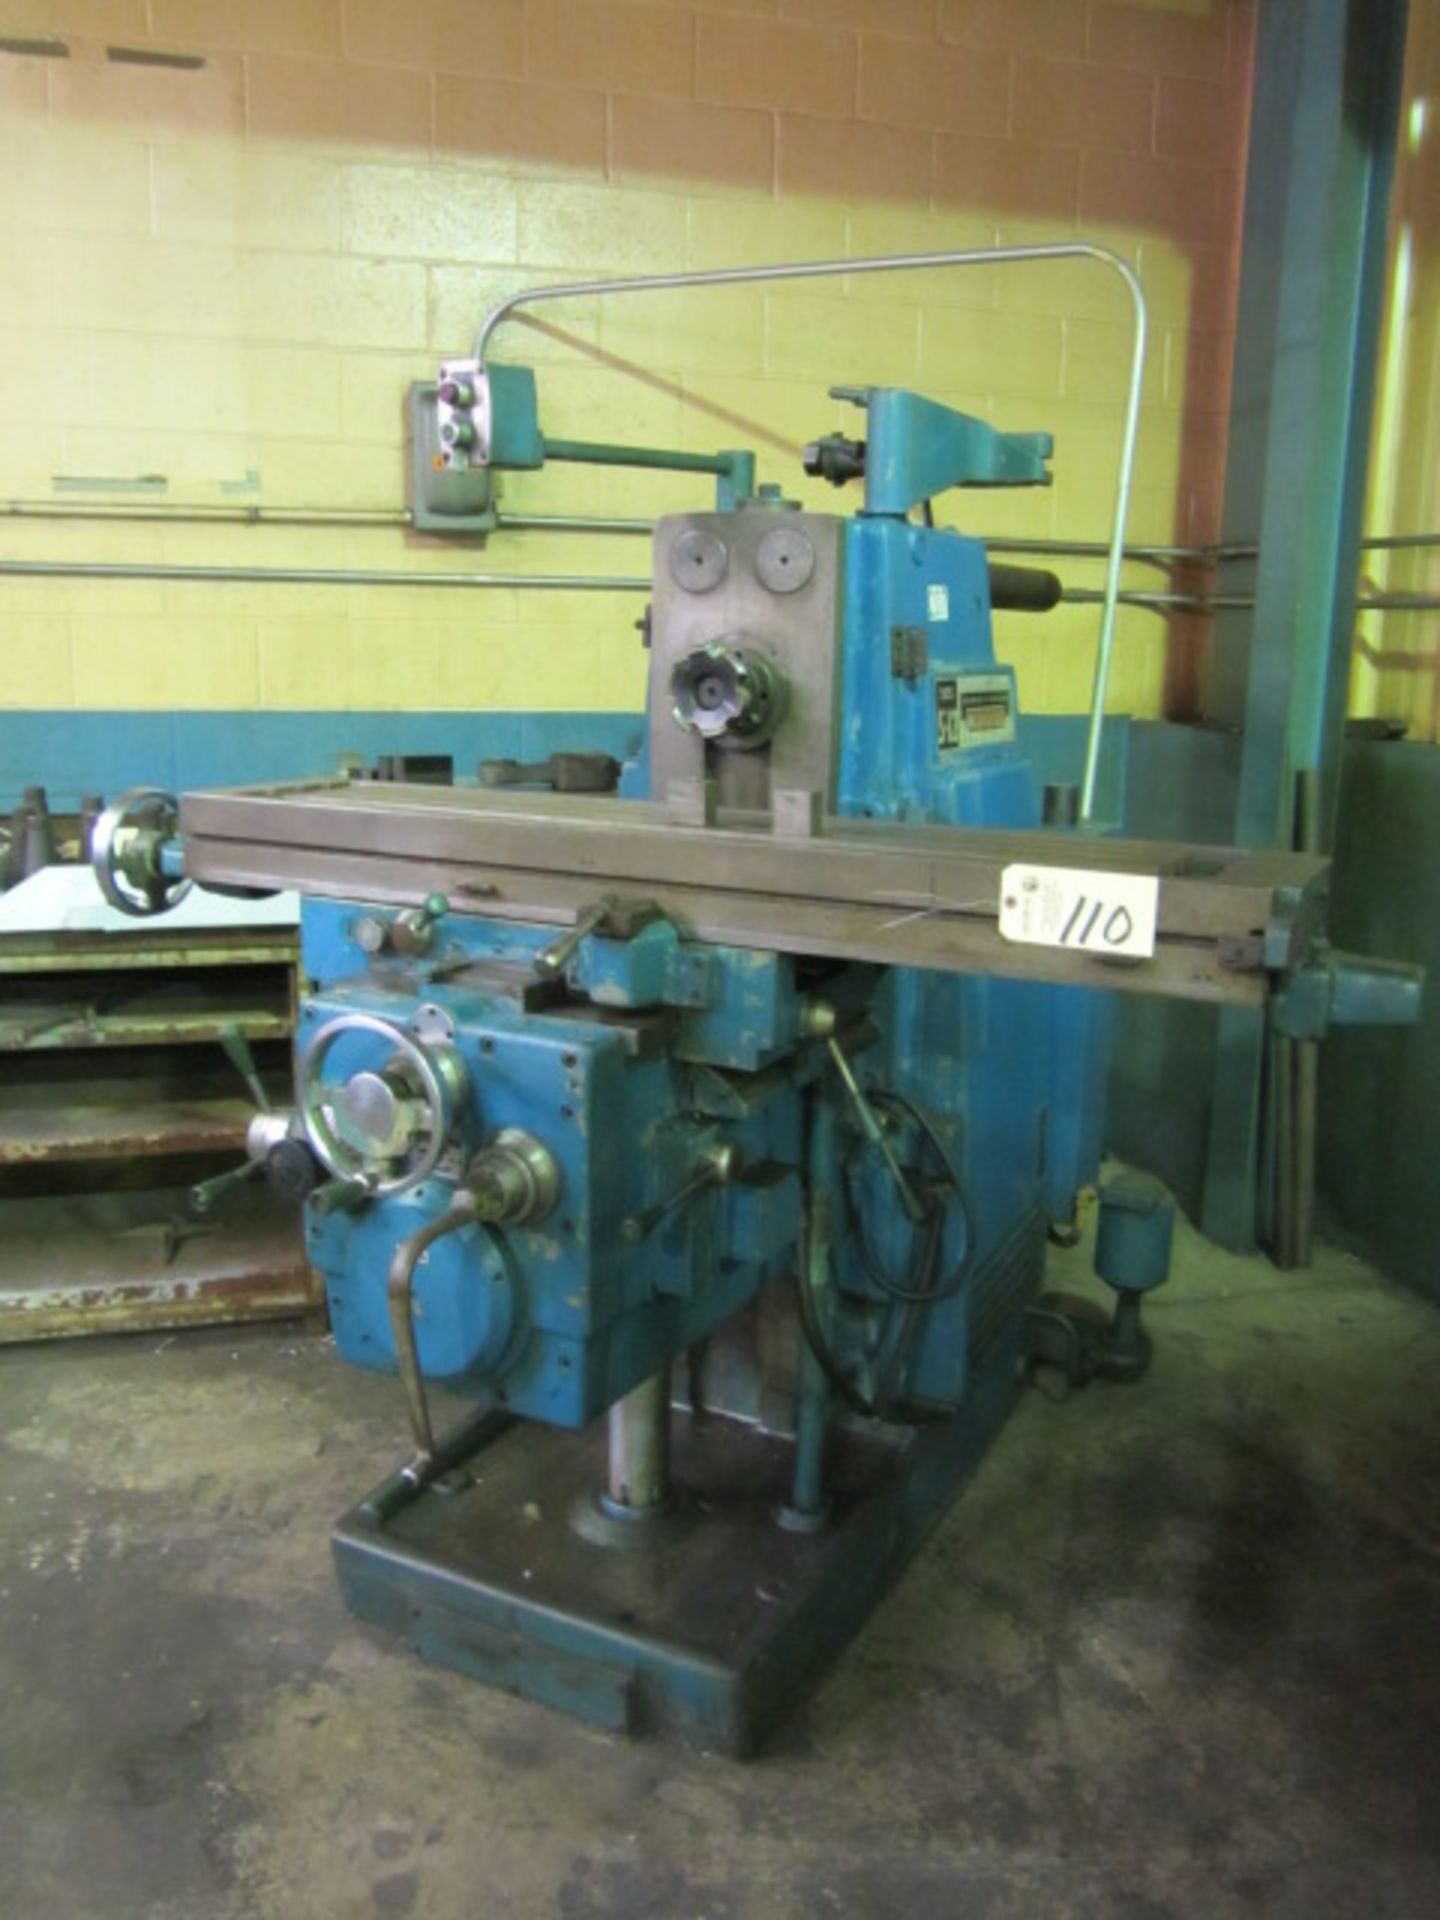 Kearney & Trecker Model S12, 205 Milwaukee Horizontal Milling Machine with 12'' x 56'' Power Feed